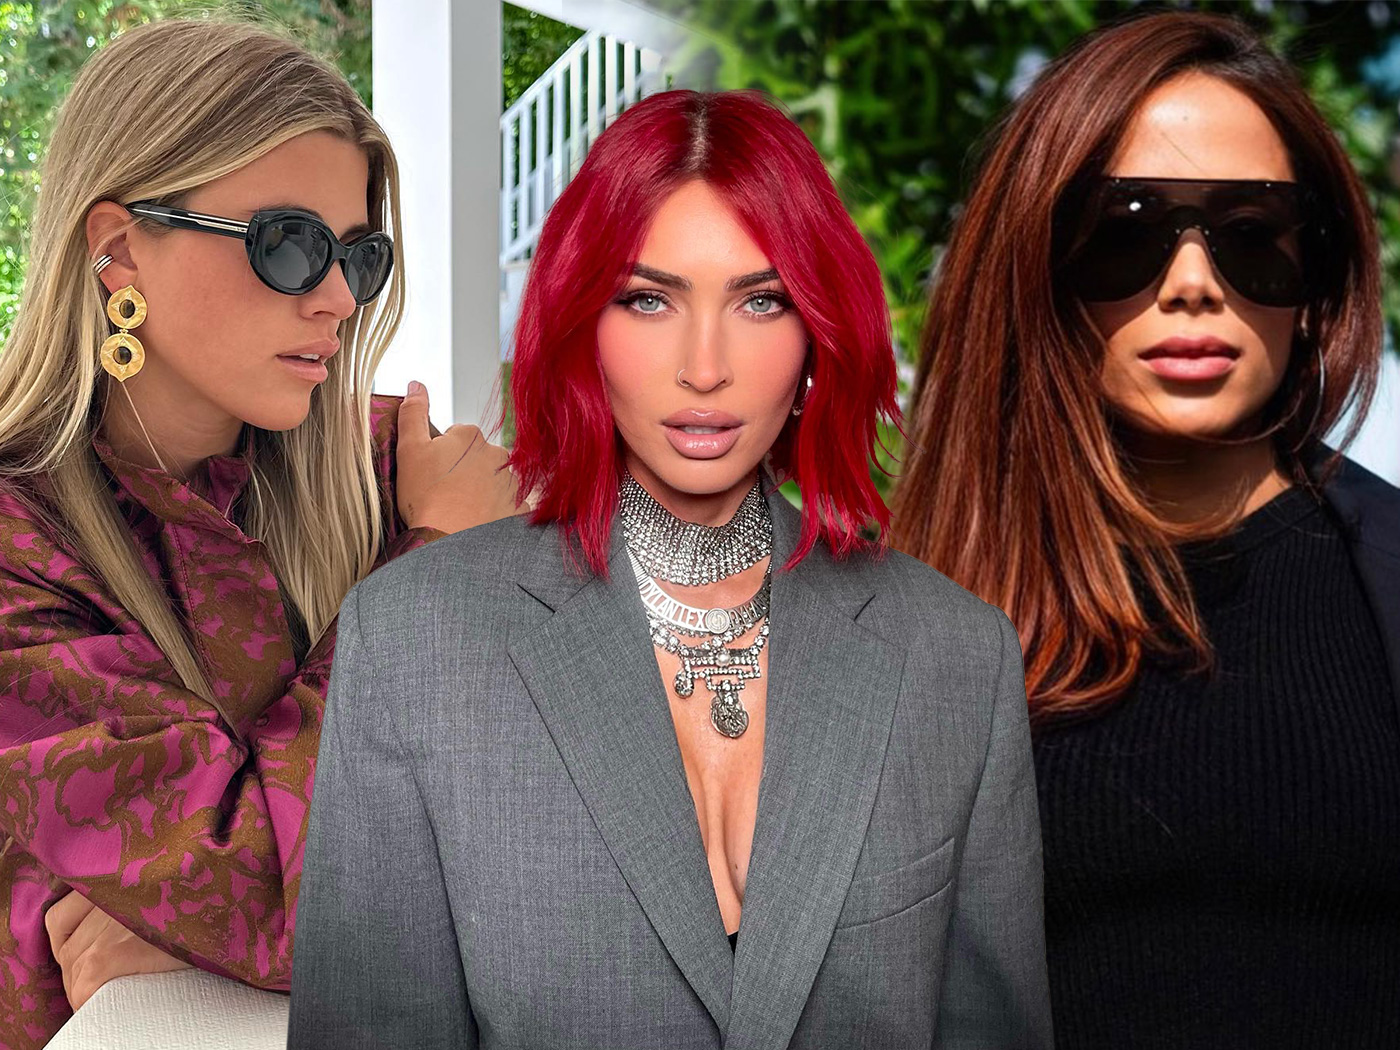 Χρώμα στα μαλλιά: Οι 10 τάσεις που προτείνουν οι celebrity hairstylists για τον φετινό χειμώνα